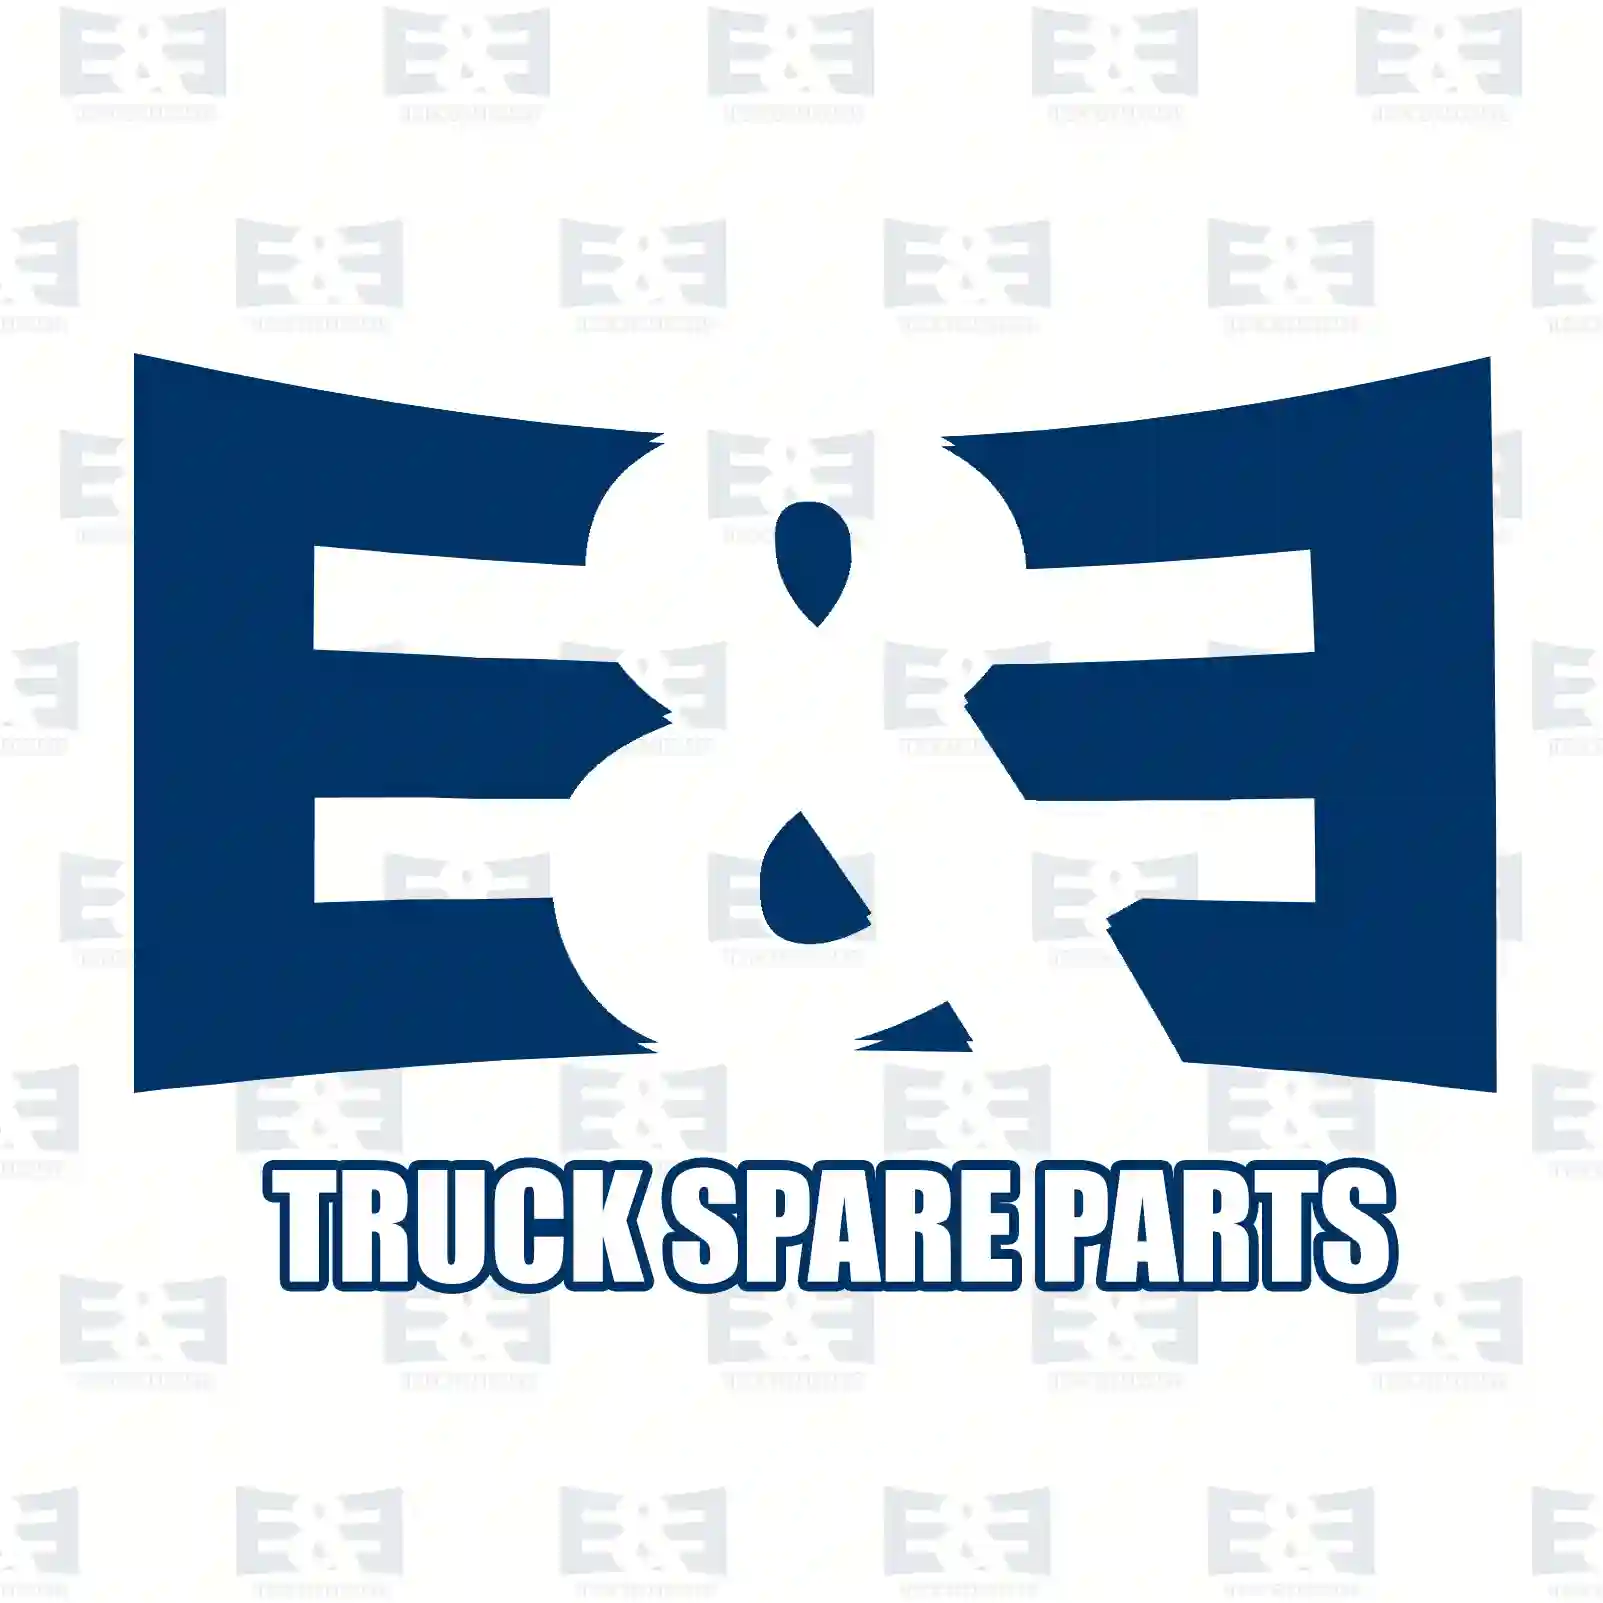 Cabin shock absorber, 2E2275403, 504084378, 504115380, ZG41197-0008 ||  2E2275403 E&E Truck Spare Parts | Truck Spare Parts, Auotomotive Spare Parts Cabin shock absorber, 2E2275403, 504084378, 504115380, ZG41197-0008 ||  2E2275403 E&E Truck Spare Parts | Truck Spare Parts, Auotomotive Spare Parts